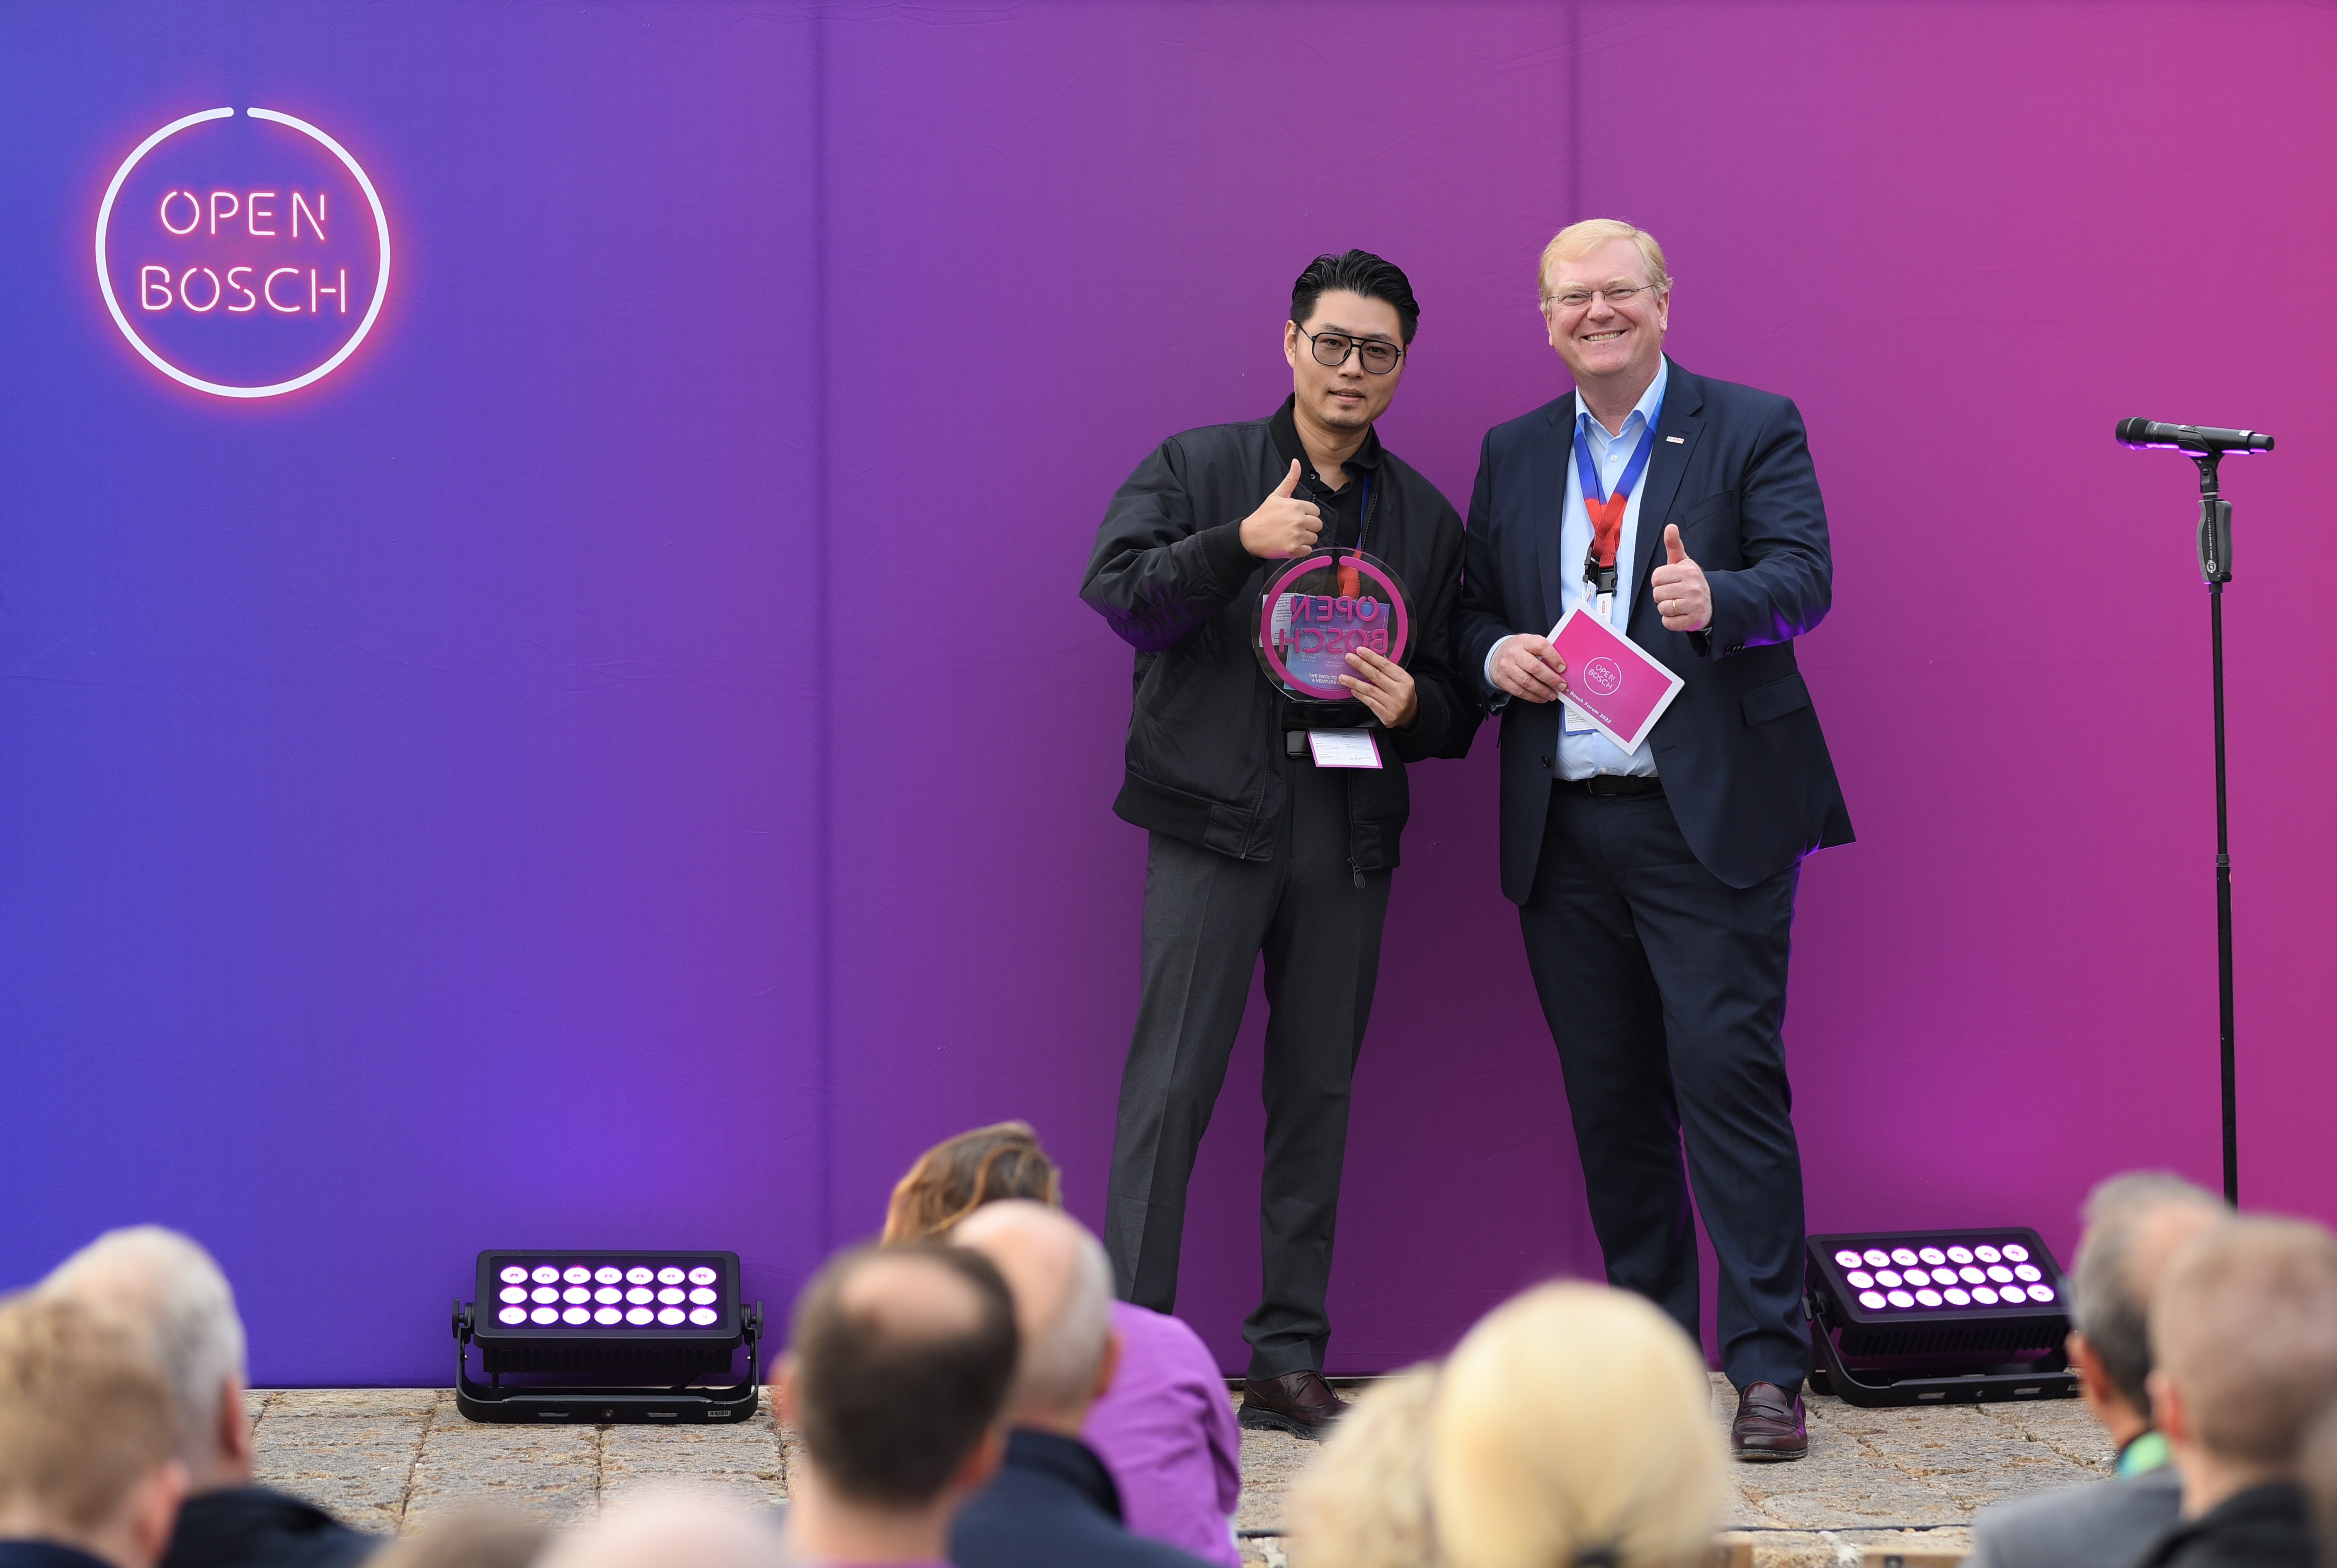 Open Bosch Award 2022 Winner – Ambrose Chow (Business Director Grea Technology); Dr. Stefan Hartung (Chairman of the Board of Management of Robert Bosch GmbH)